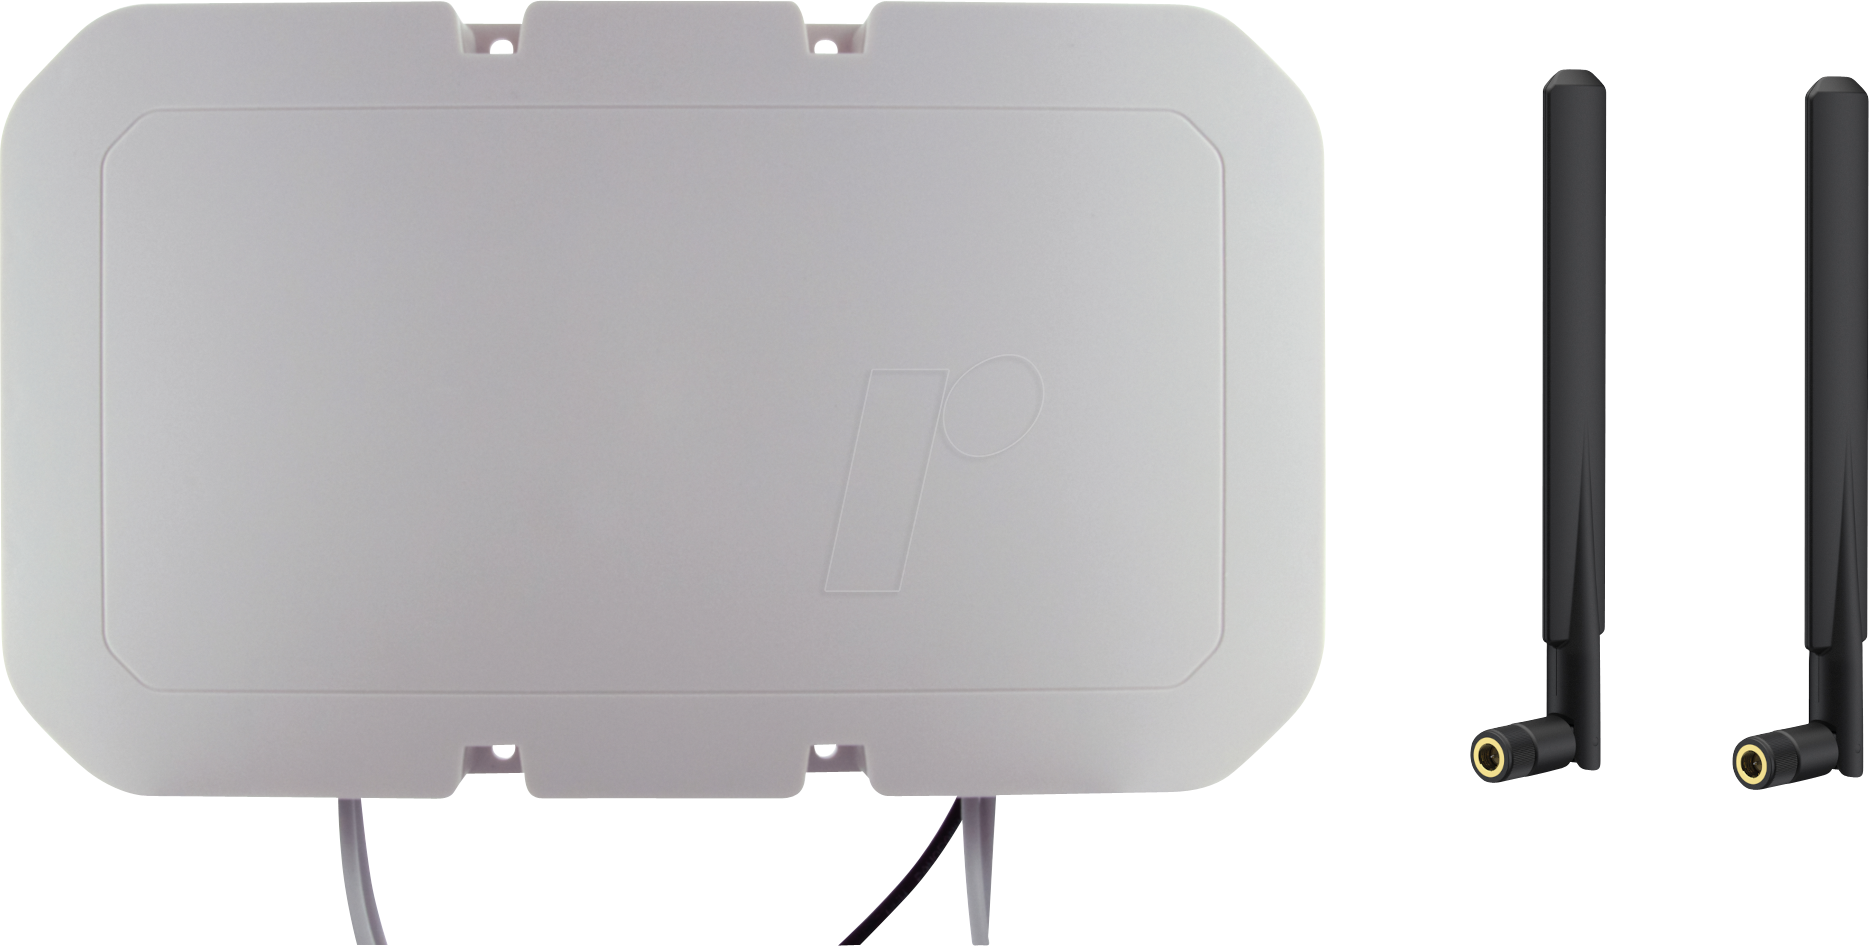 ANTKIT-4M2W1GBUI - Antennenkit für Router, Gebäude, Mobilfunk, WLAN, GPS von PANORAMA ANTENNAS